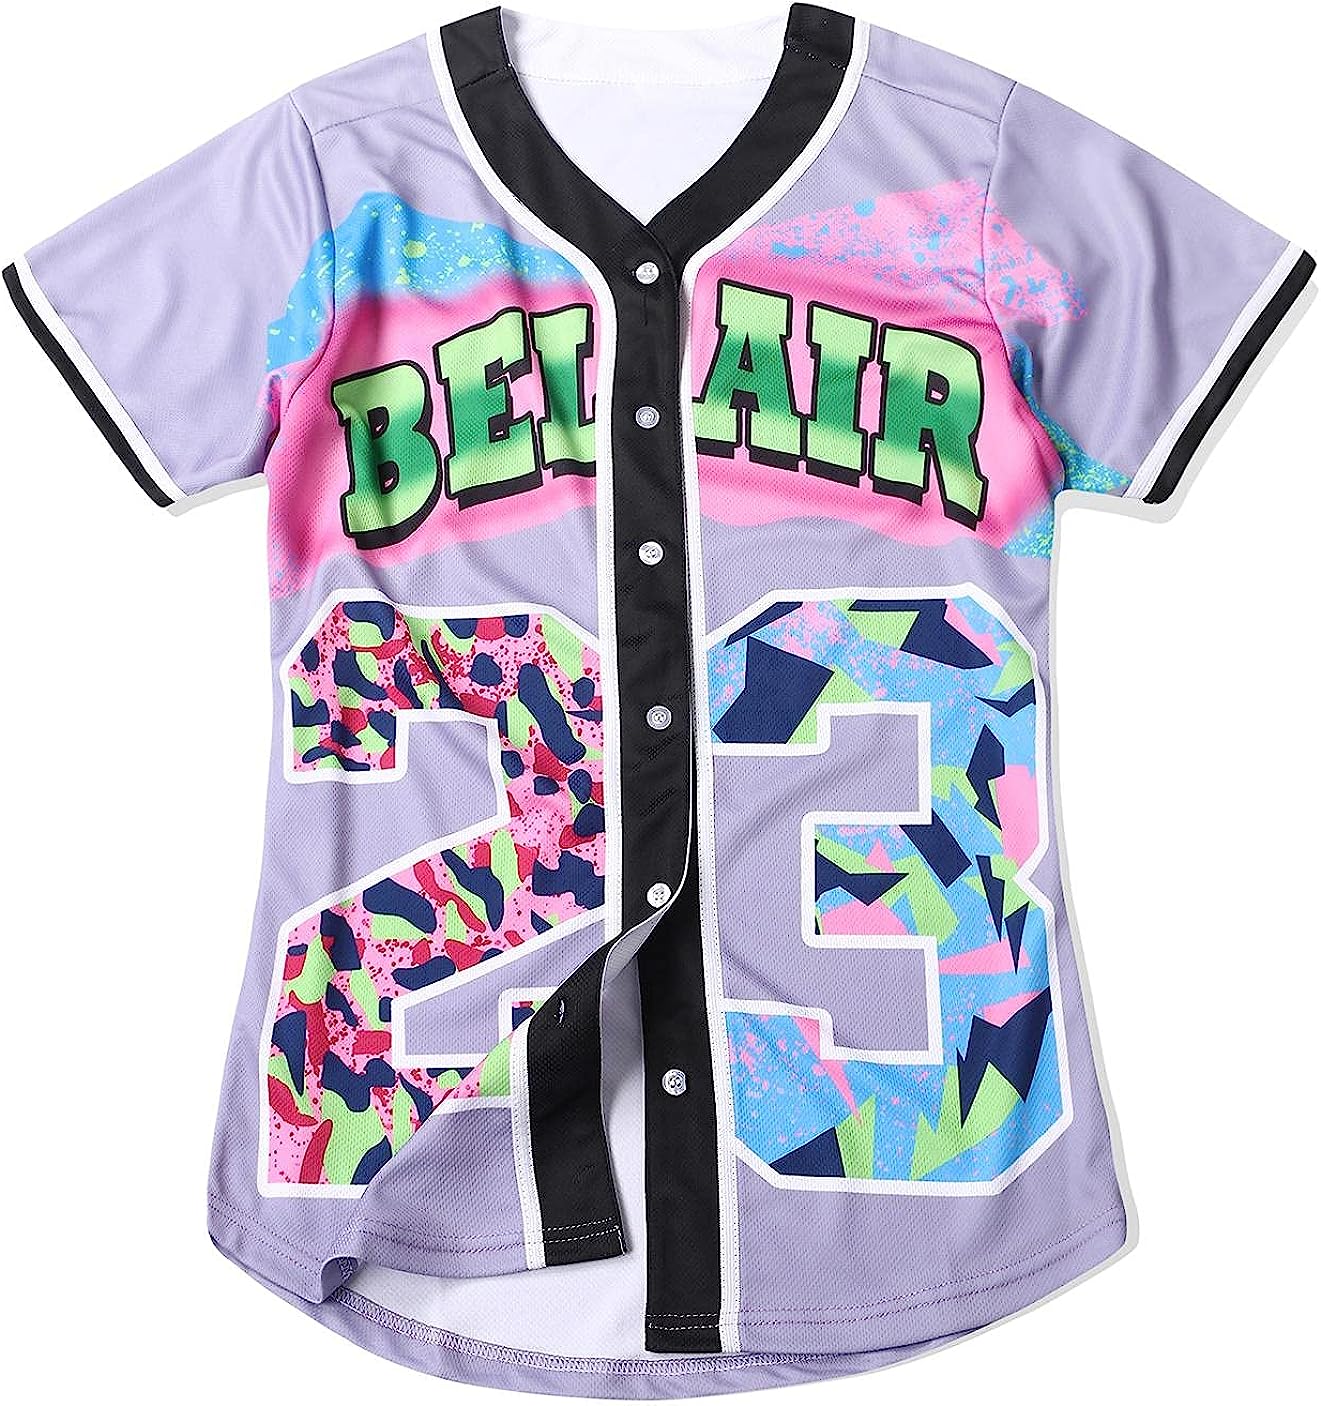 CUTHBERT 90s Outfit for Women,Bel Air Baseball Jersey Shirt for